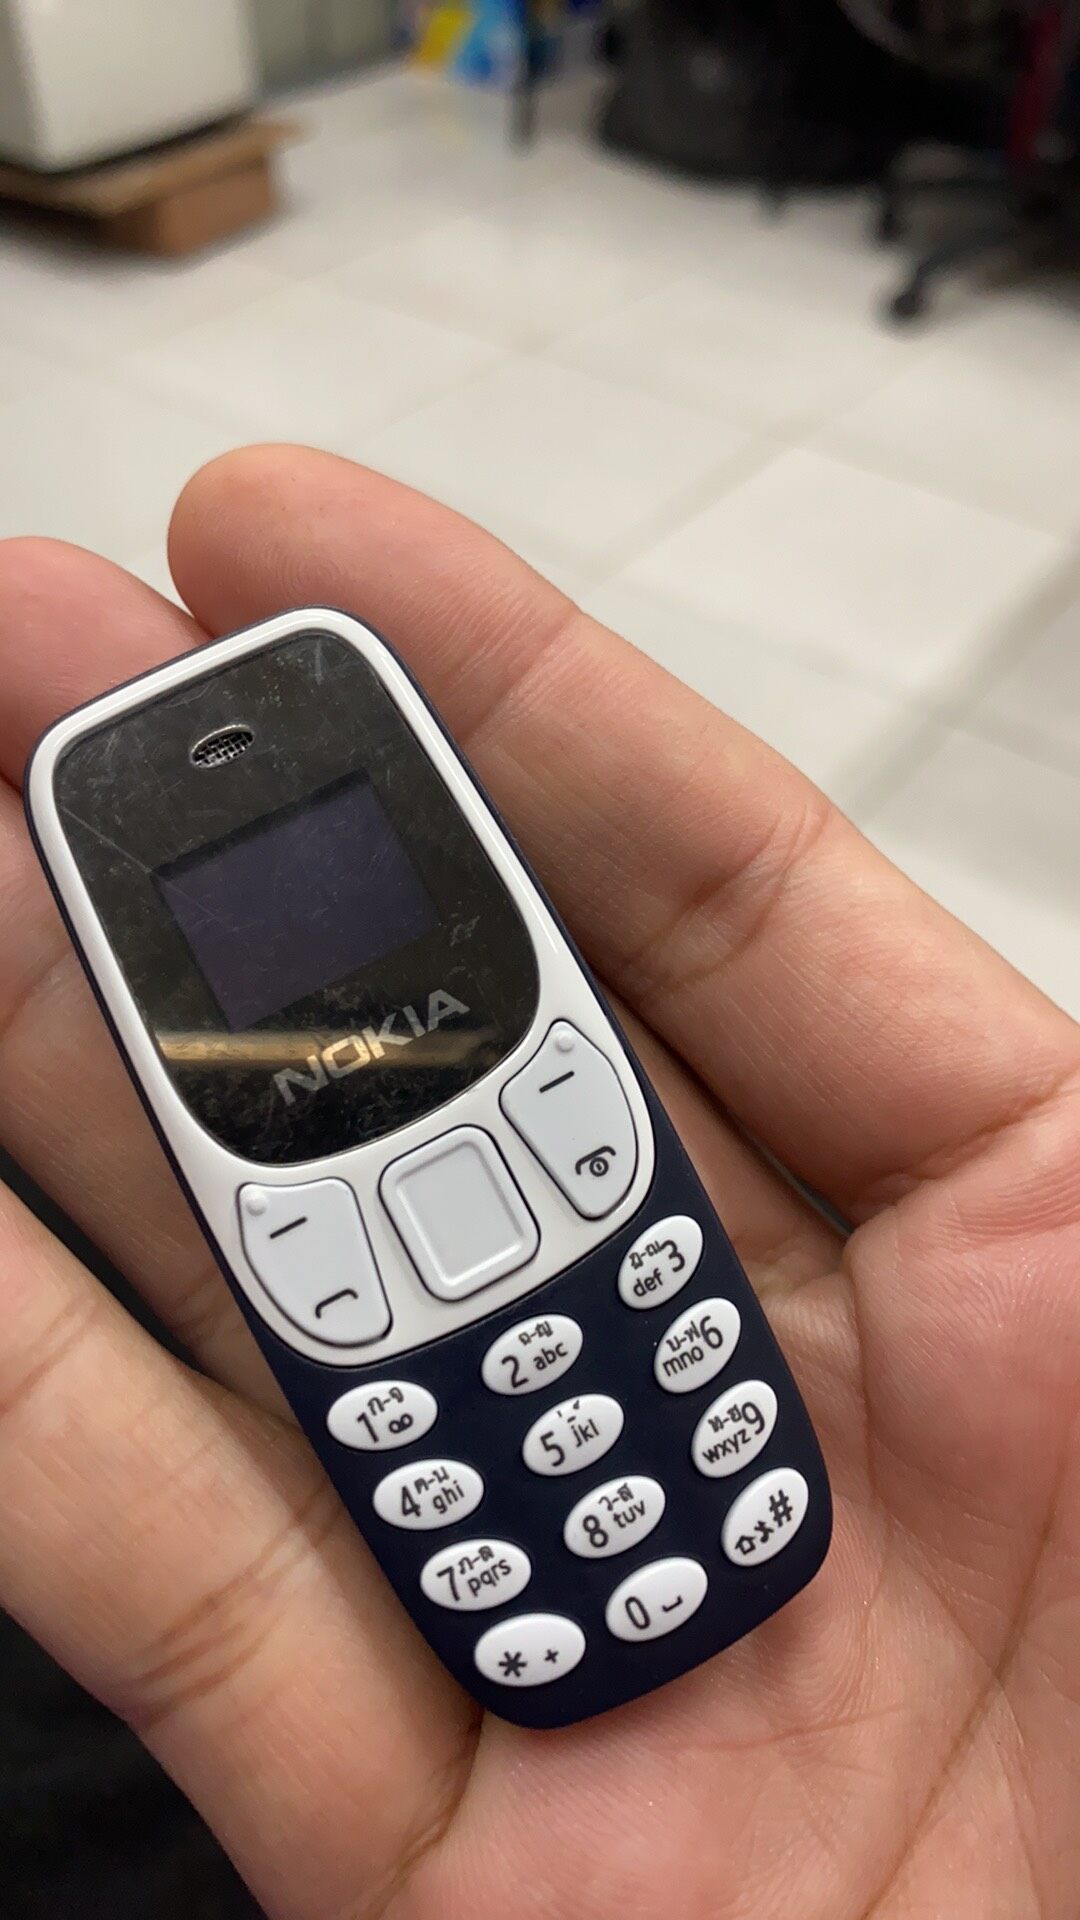 โทรศัพท์จิ๋ว โทรศัพท์เล็ก 3310 BM10 ของแท้ 2 ซิม รองรับภาษาไทย เสียงดัง AIS TRUE DTAC